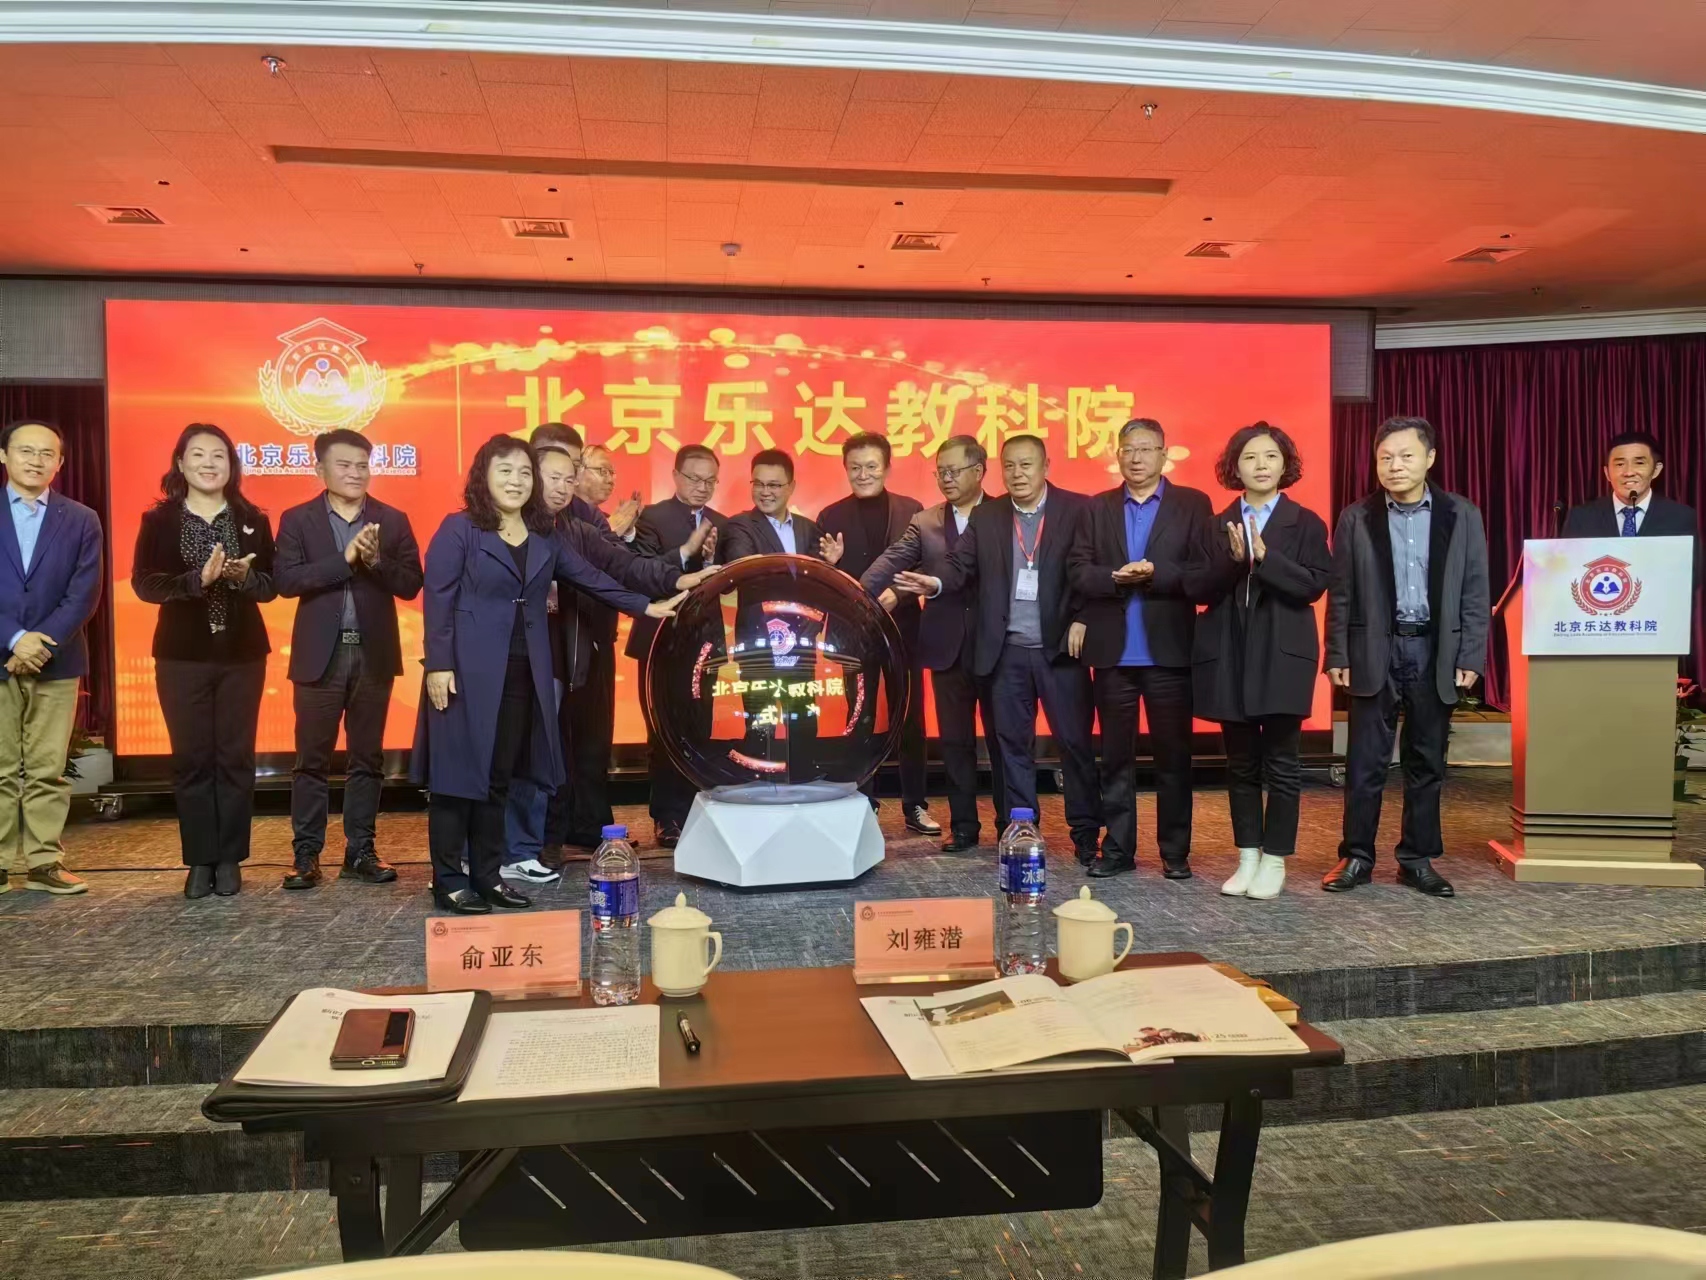 北京乐达教育科技研究院揭牌仪式,搭建学术研究和交流平台